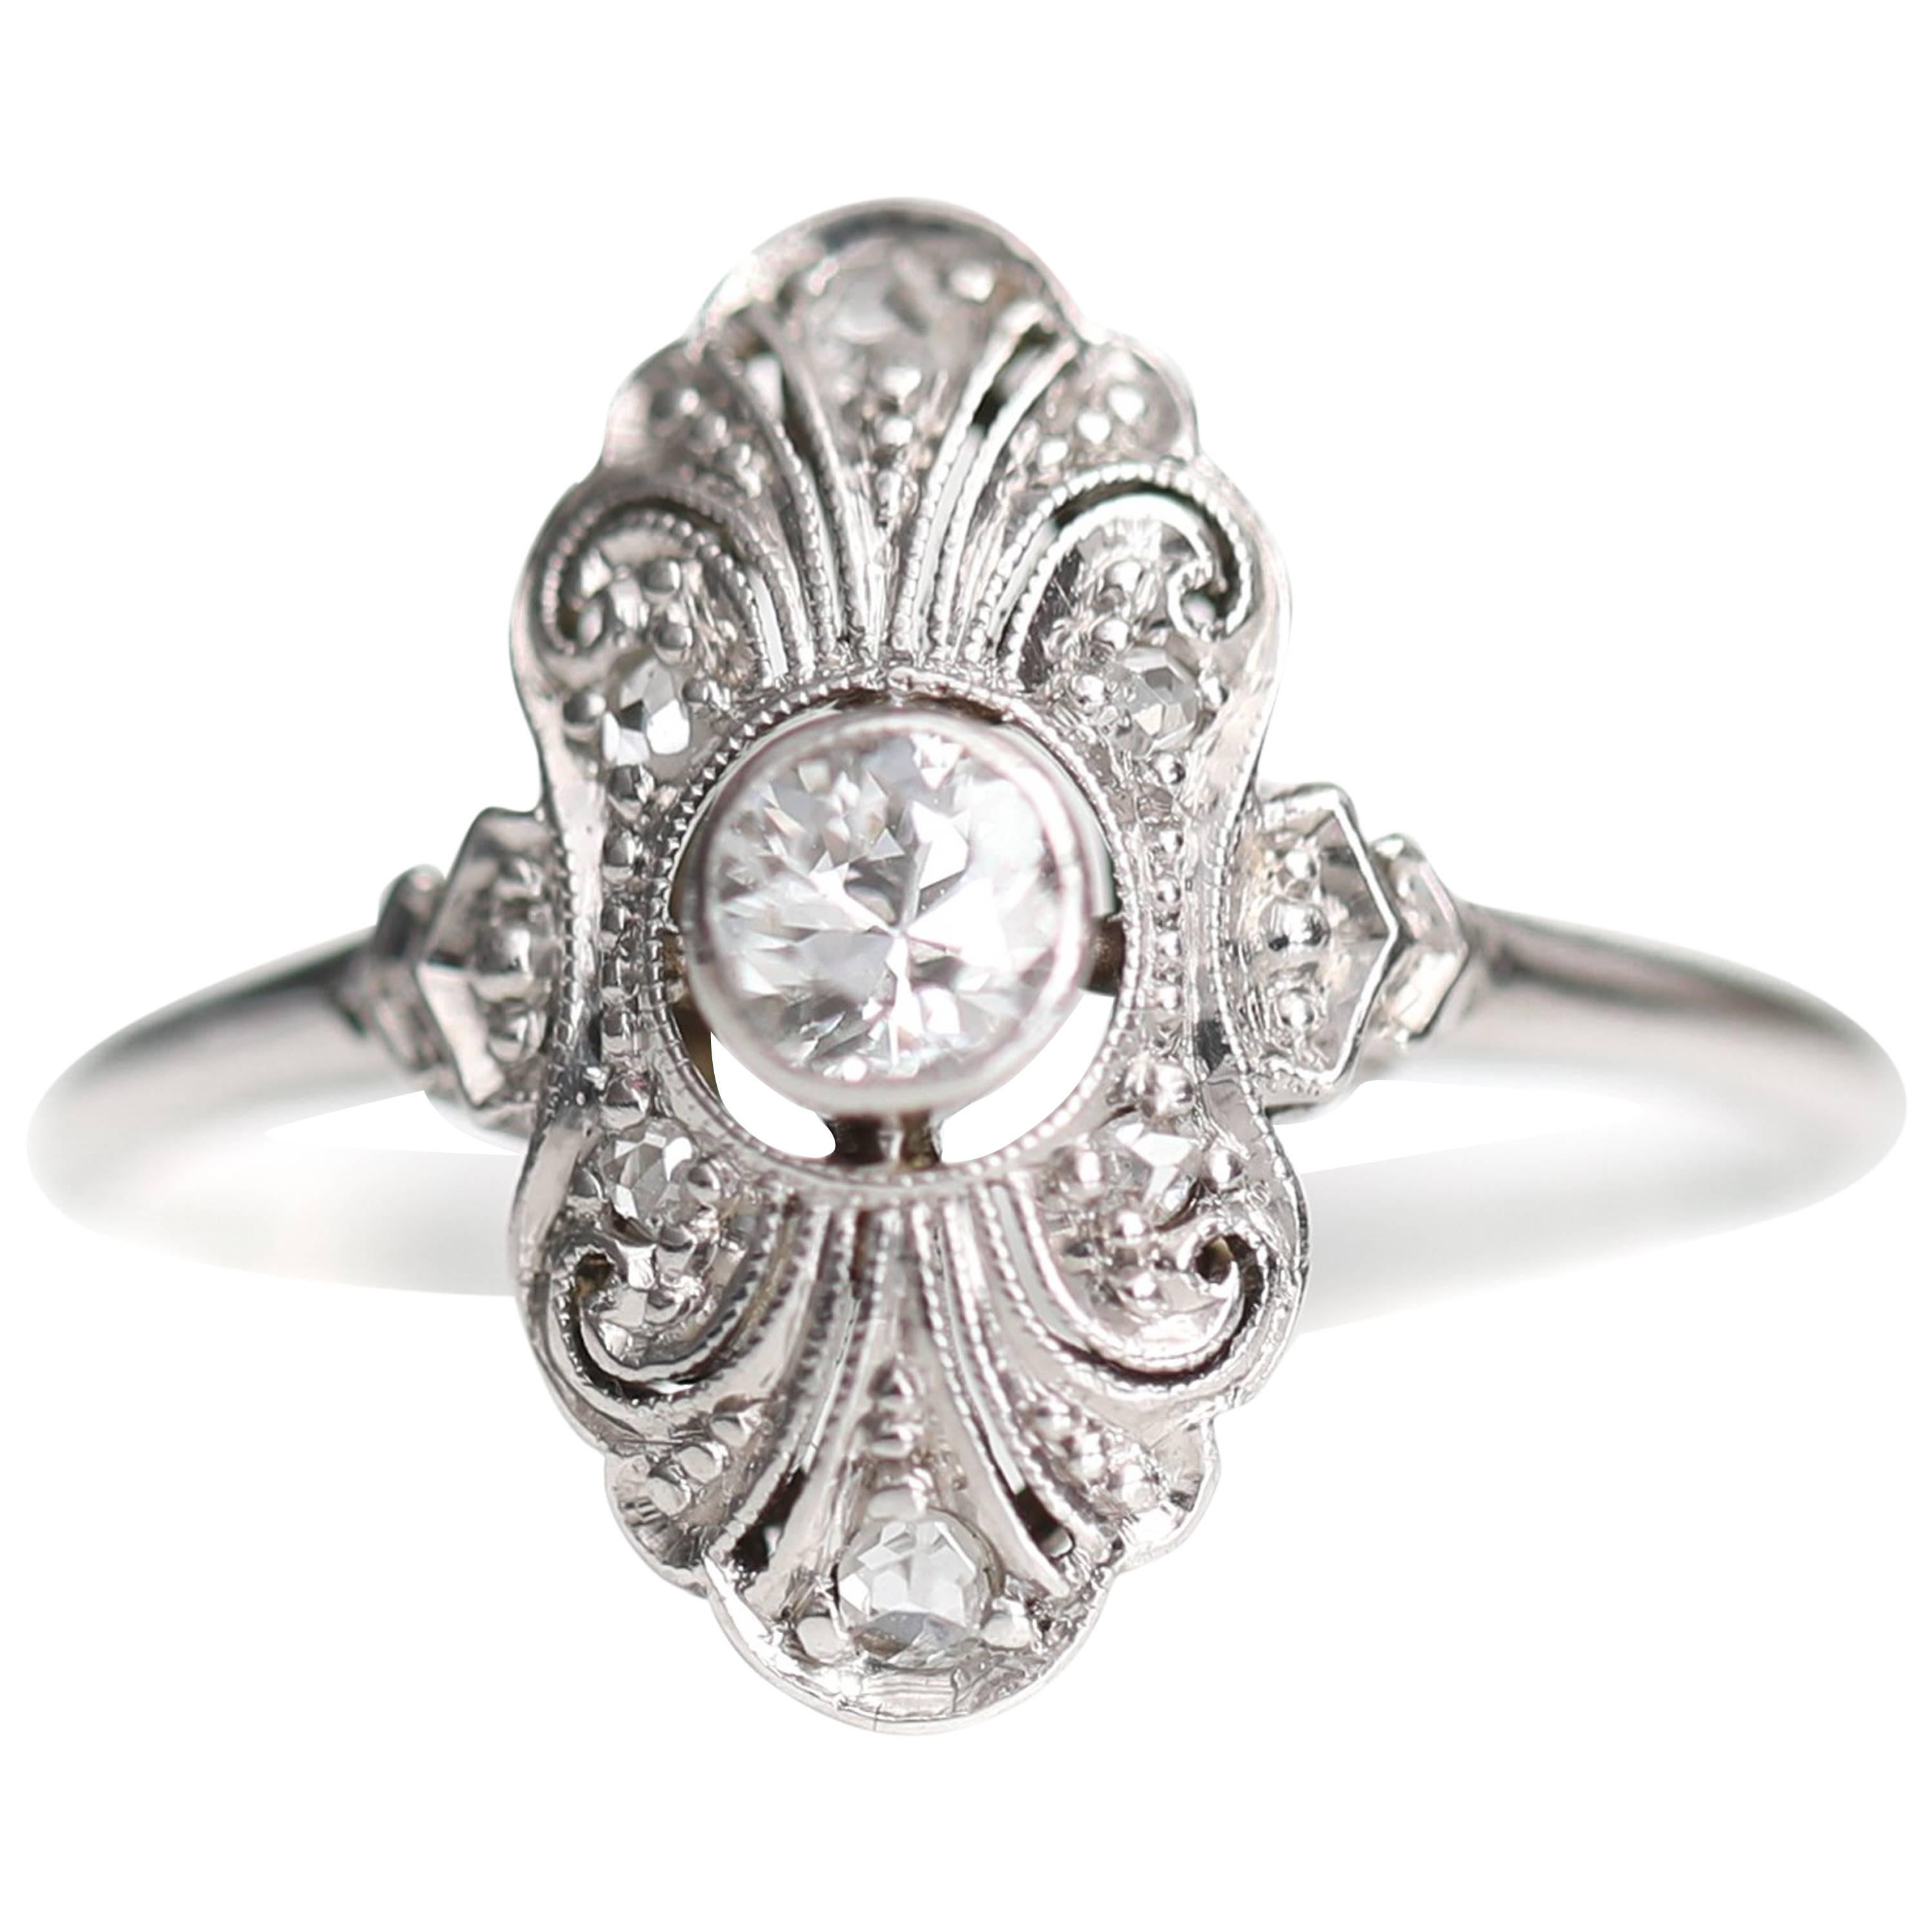 1920s .25 Carat Old European Diamond Engagement Ring, Platinum, 18k White Gold